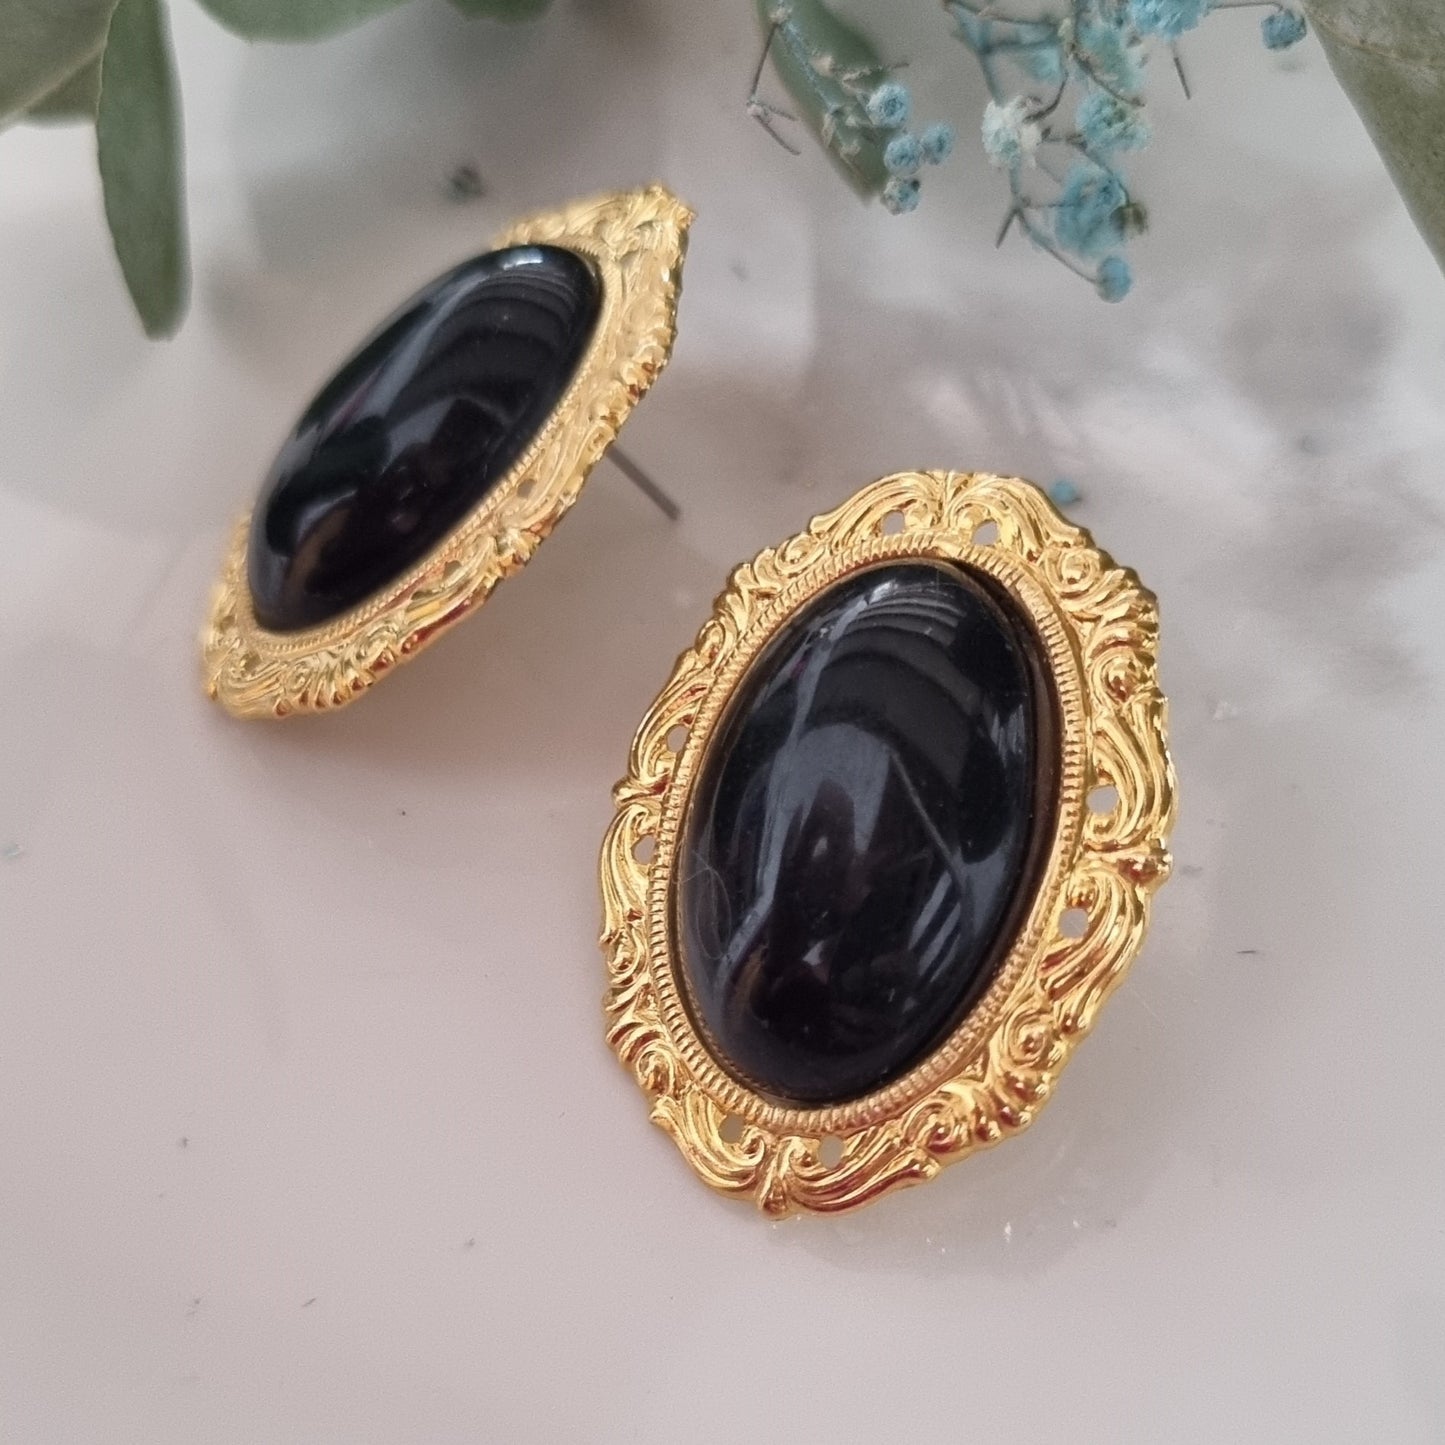 Vintage earrings - Big oval